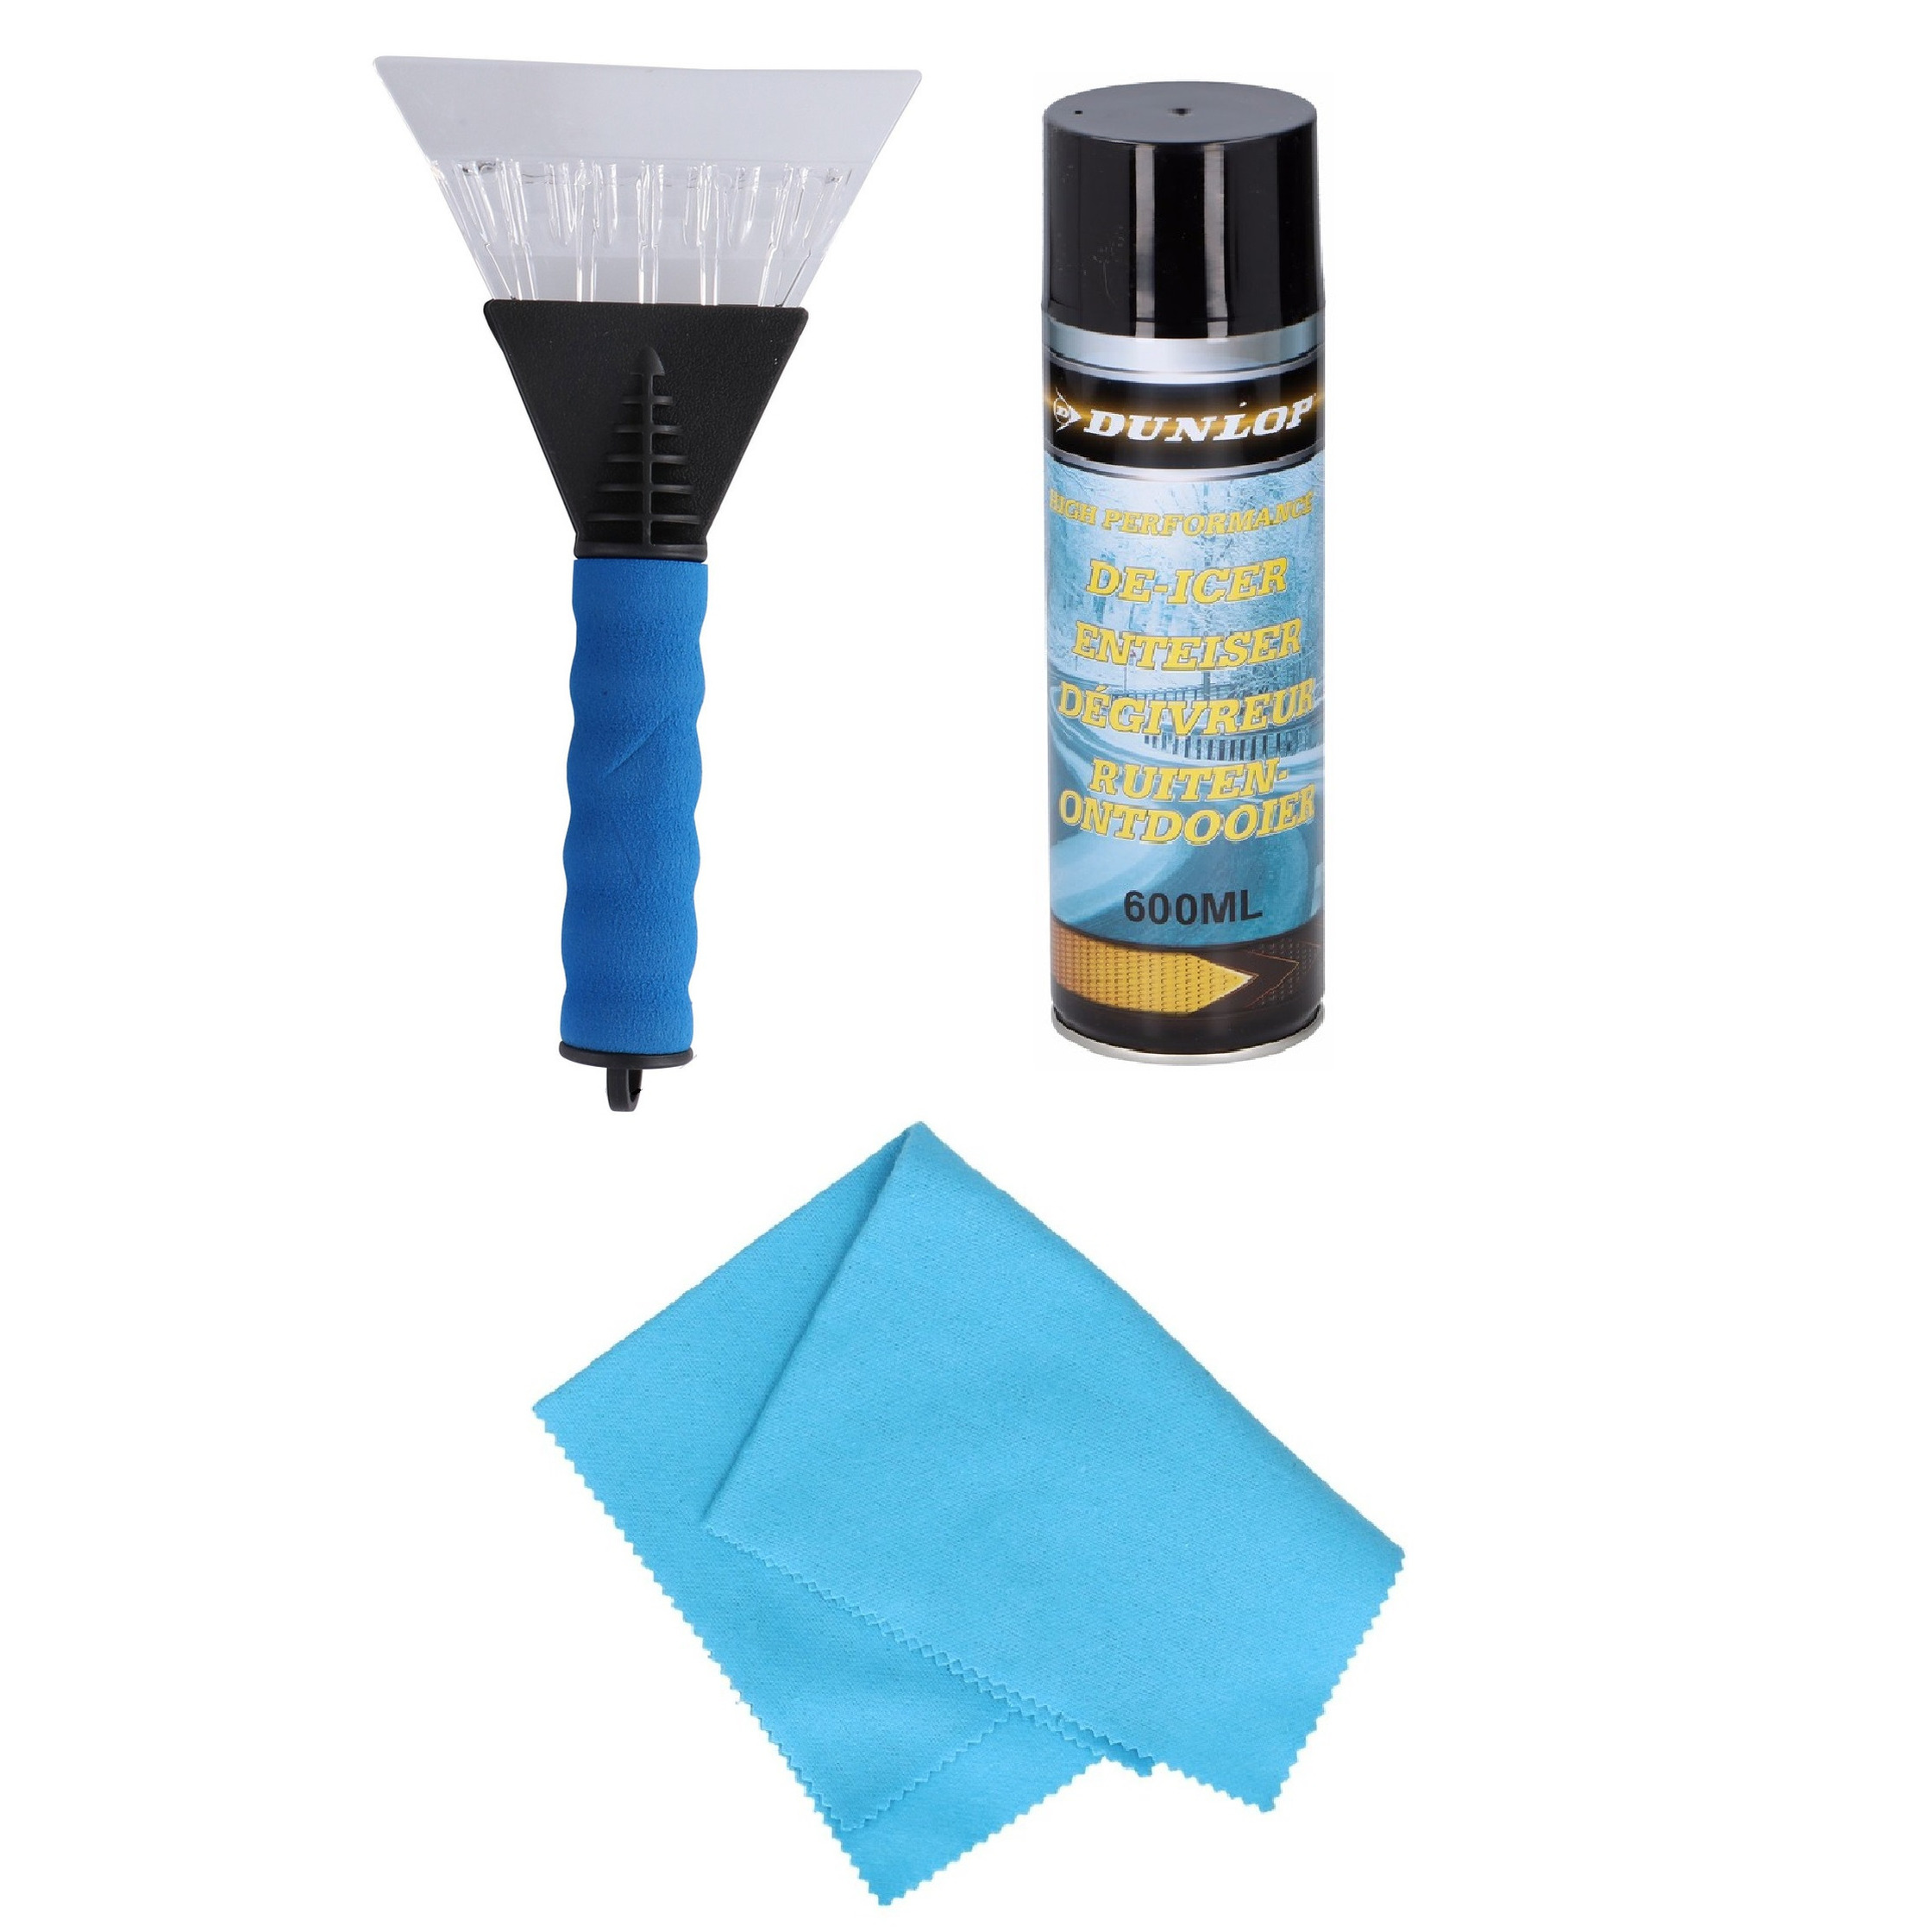 Autoramen IJskrabber soft grip 25 cm met ruitenontdooi spray en anti-condens doek